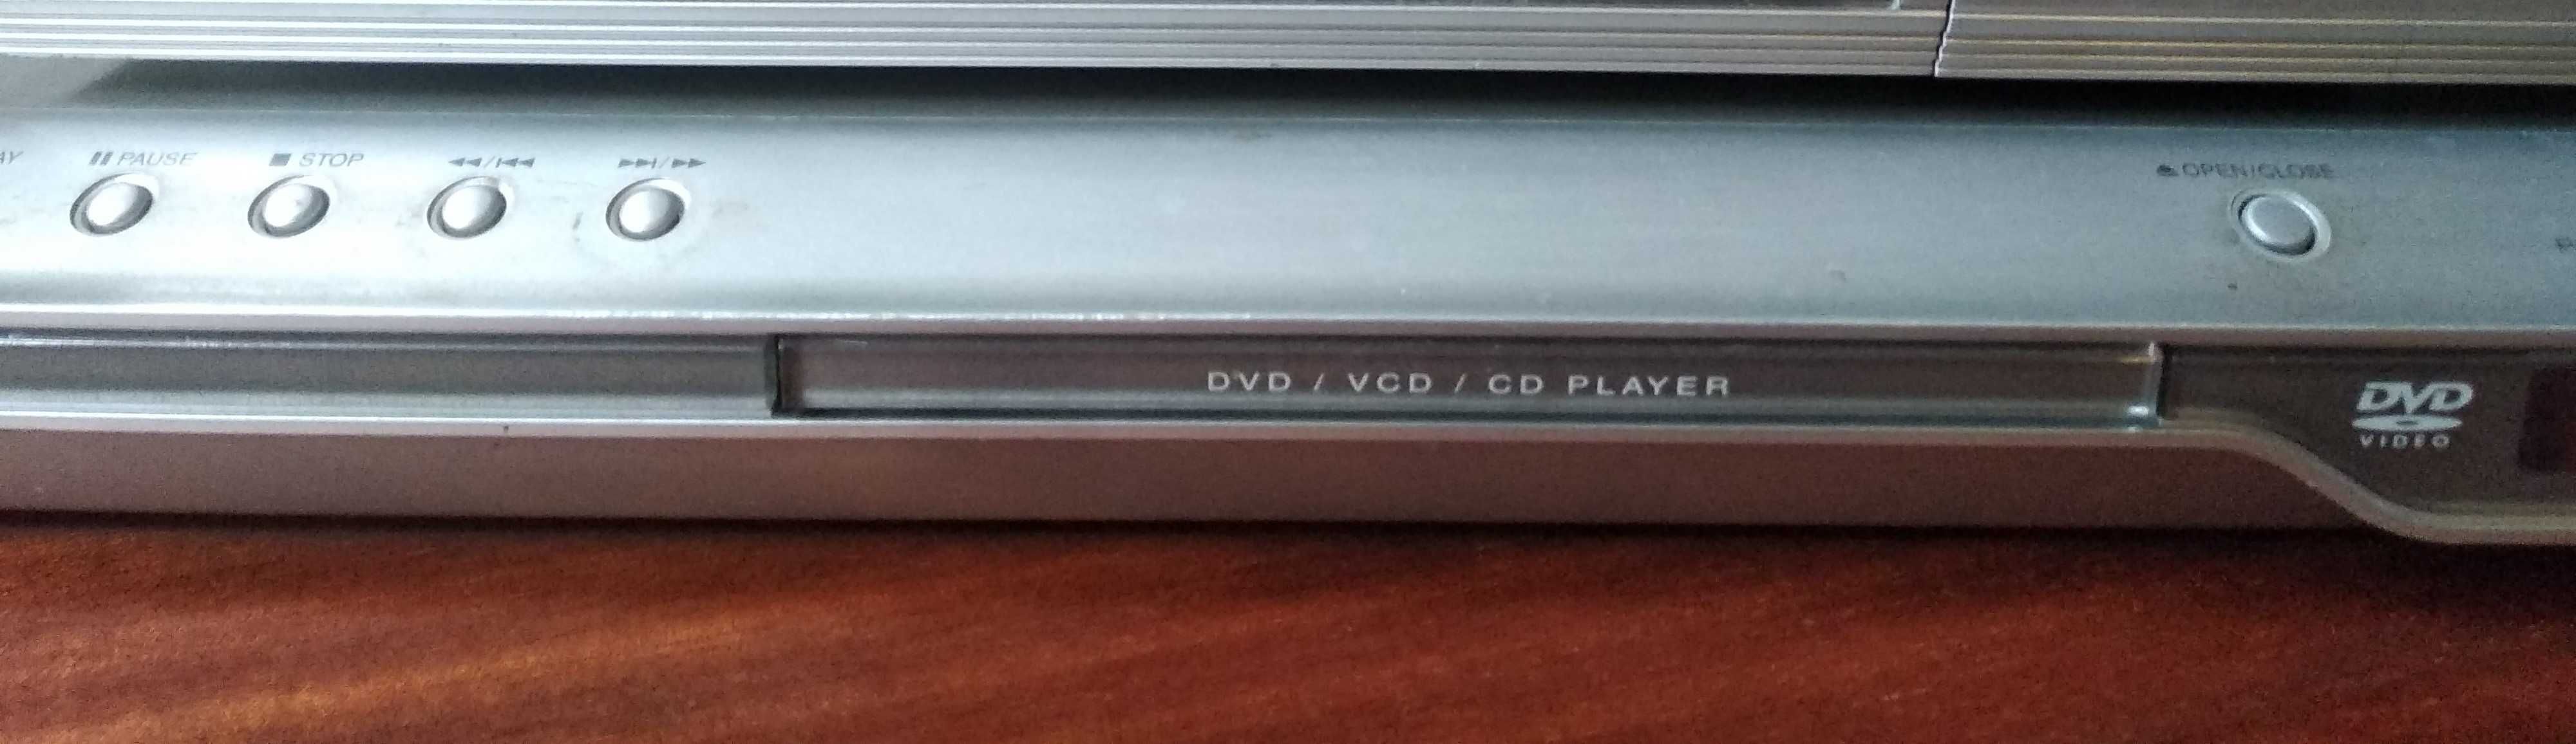 LG DVD проигрыватель дисков.